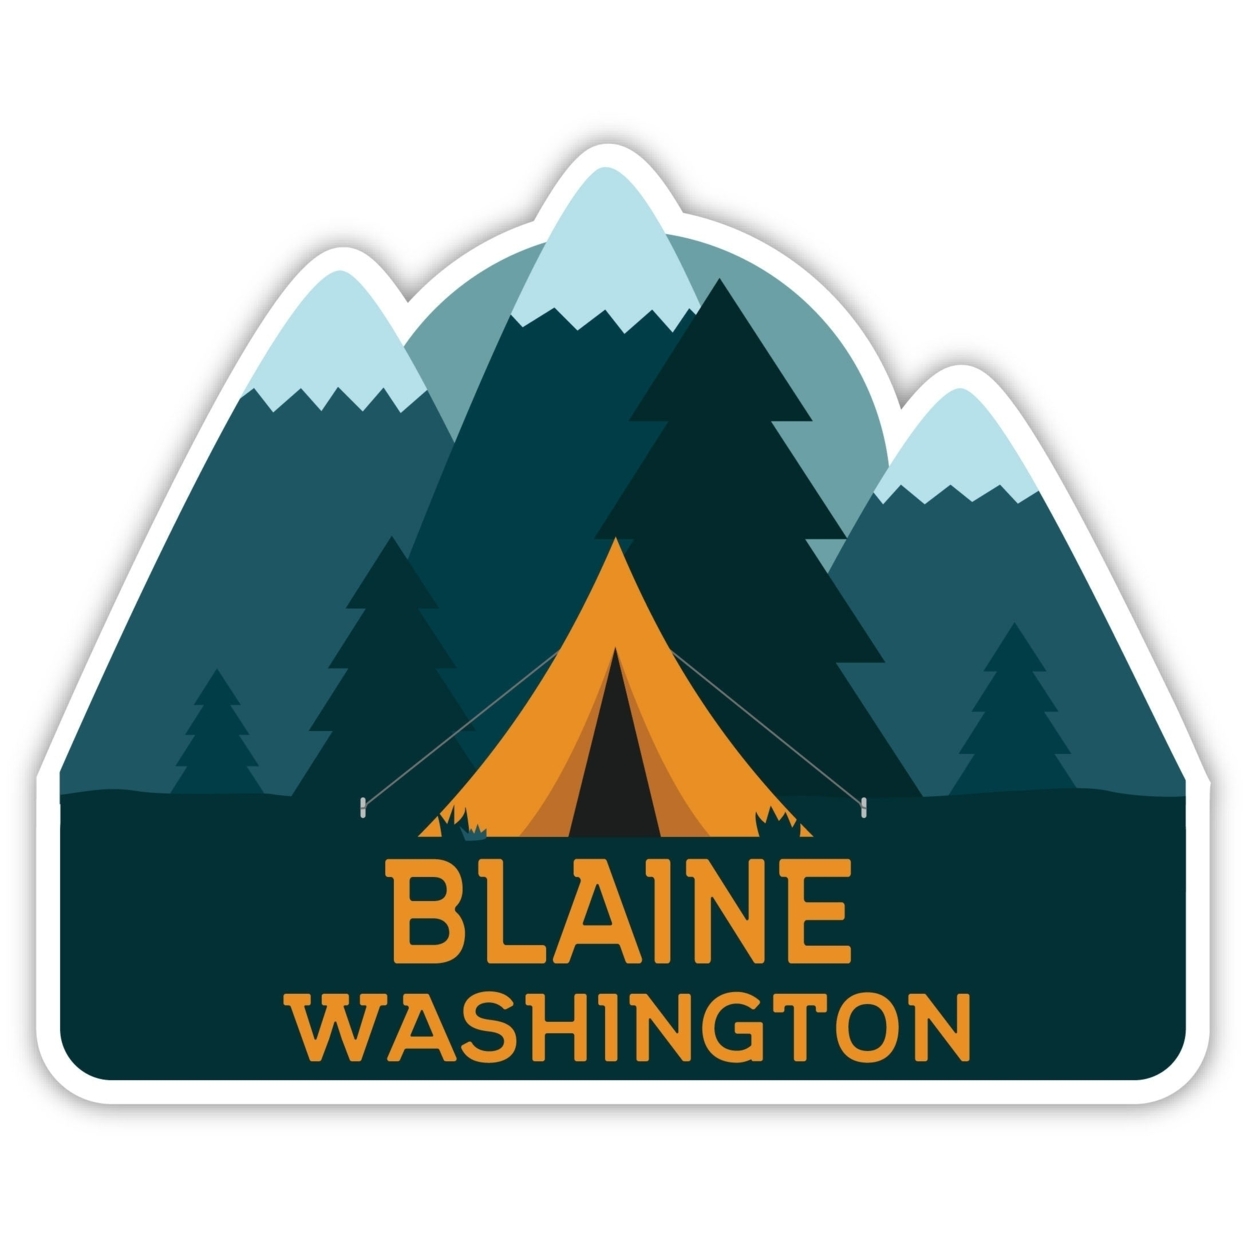 Blaine Washington Souvenir Decorative Stickers (Choose Theme And Size) - 4-Pack, 4-Inch, Tent